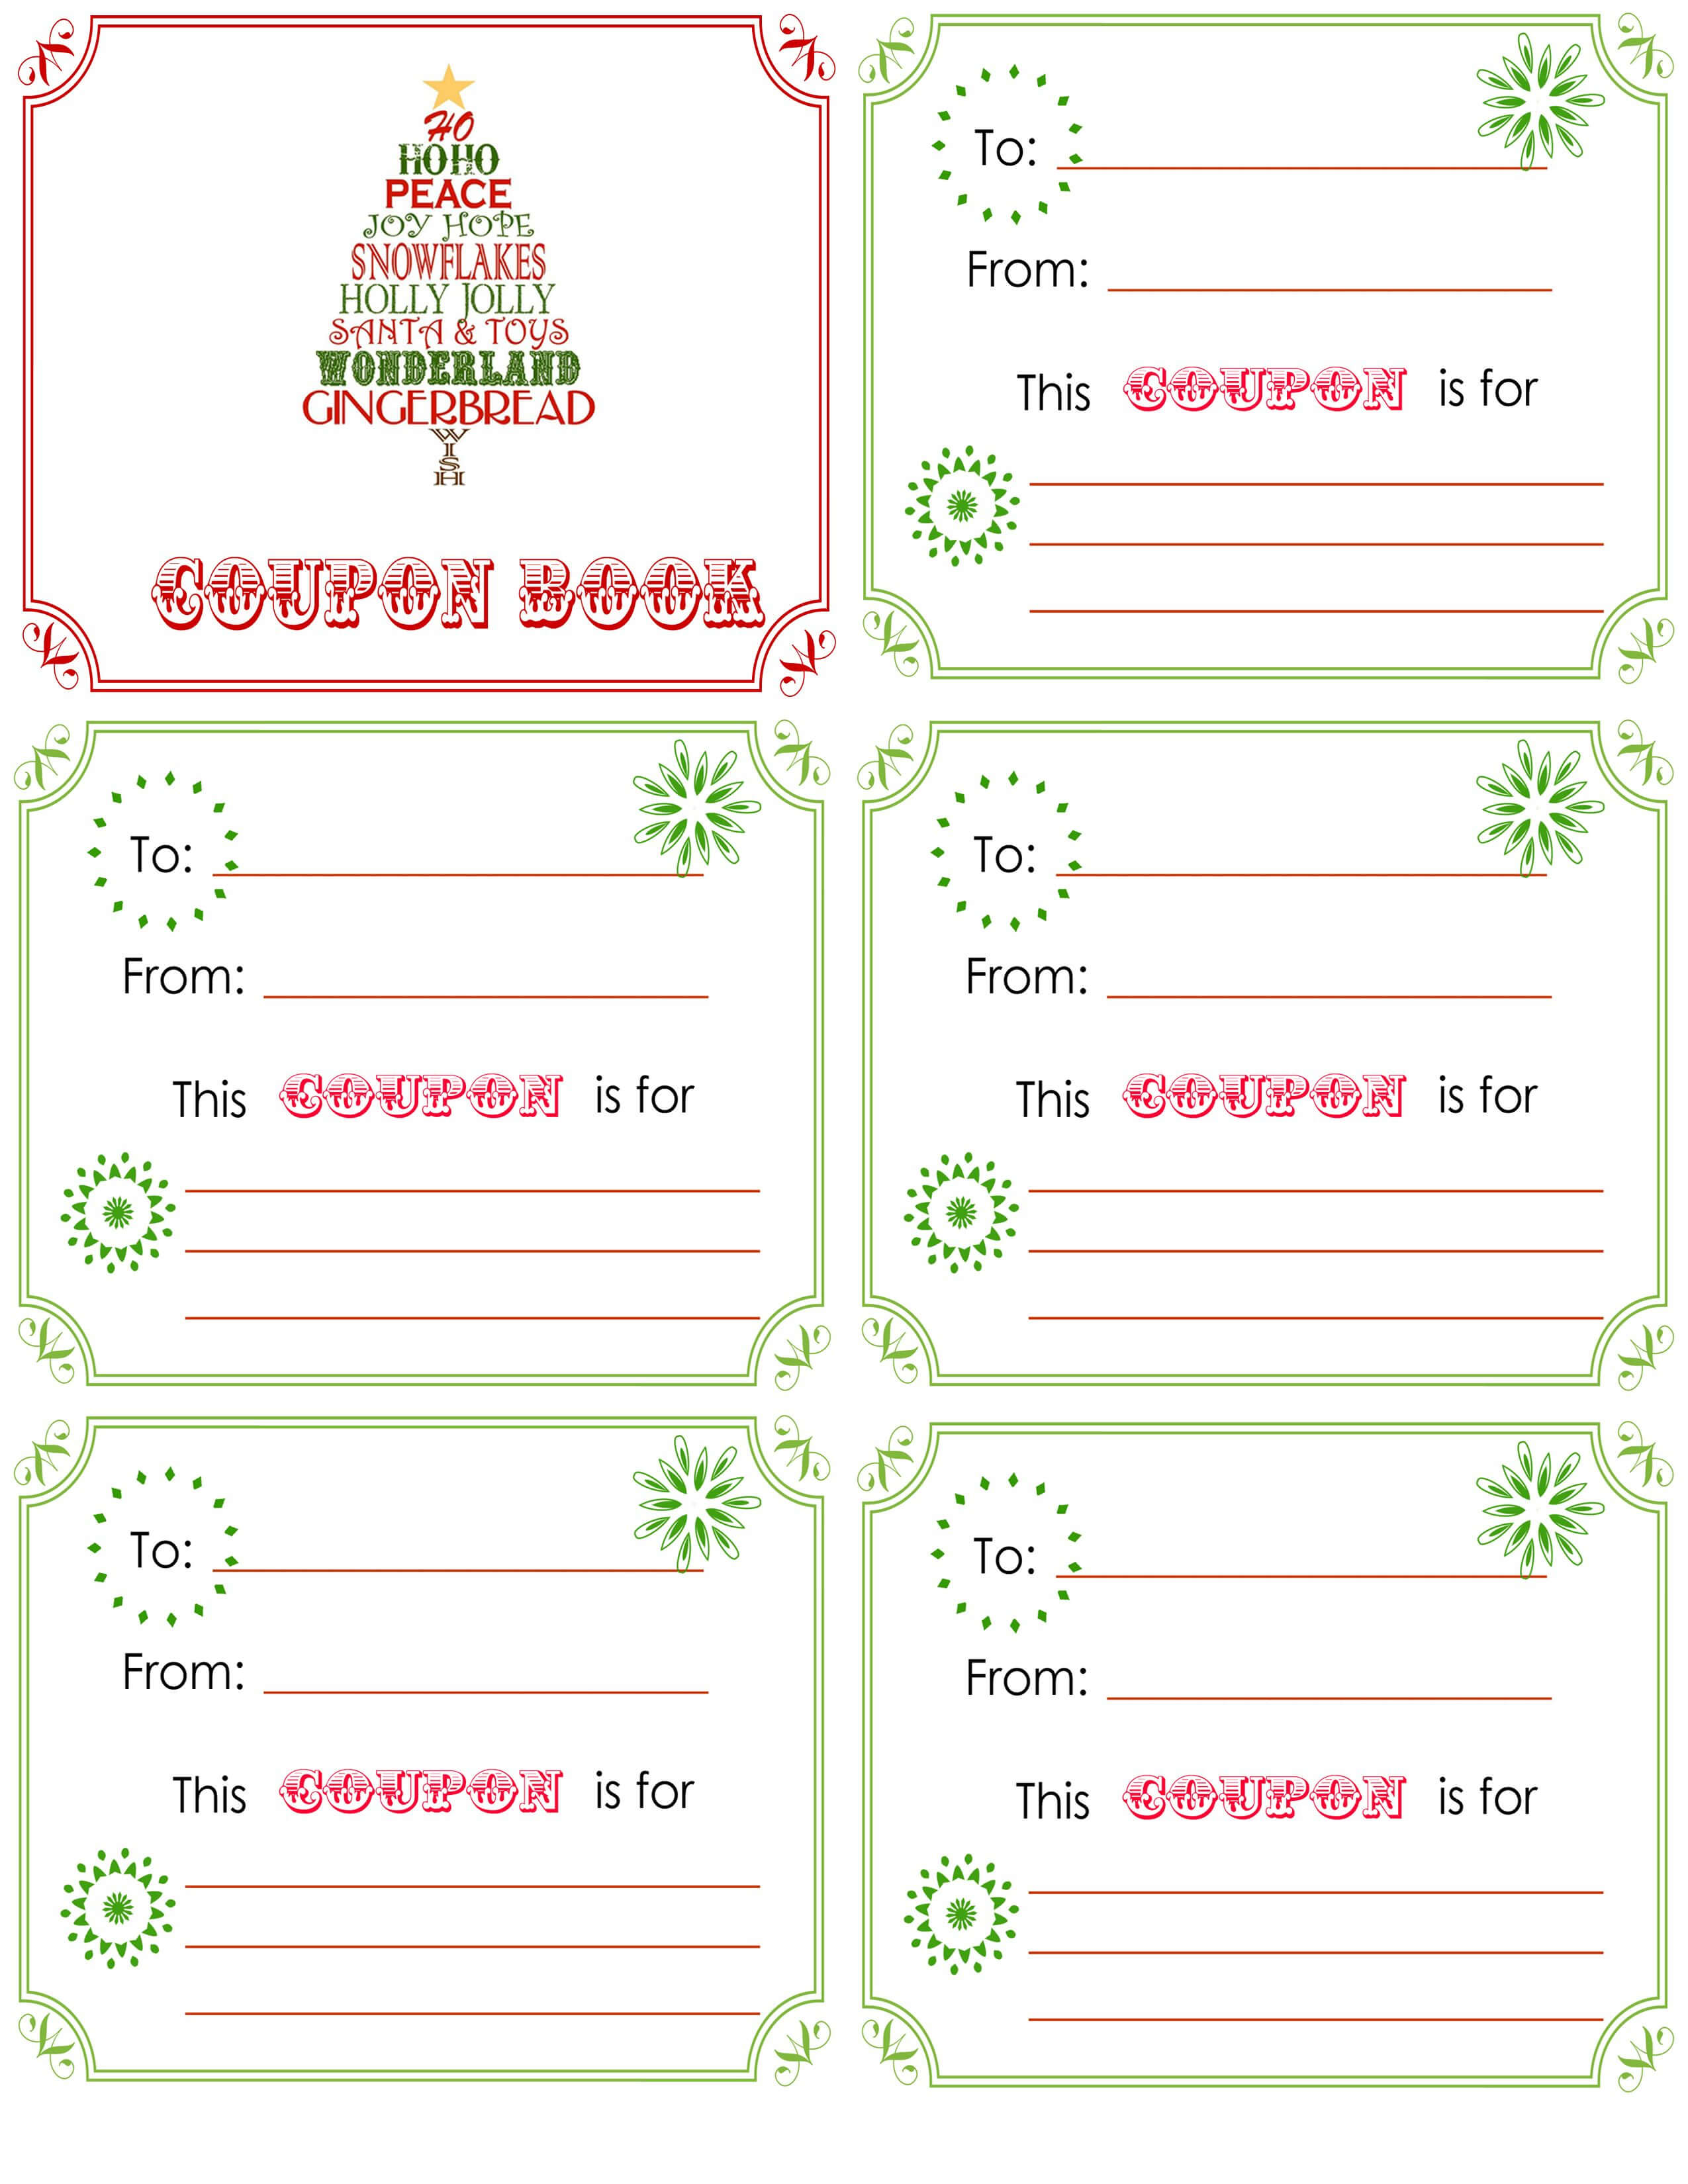 printable-christmas-coupon-book-template-christmas-card-inside-blank-coupon-template-printable